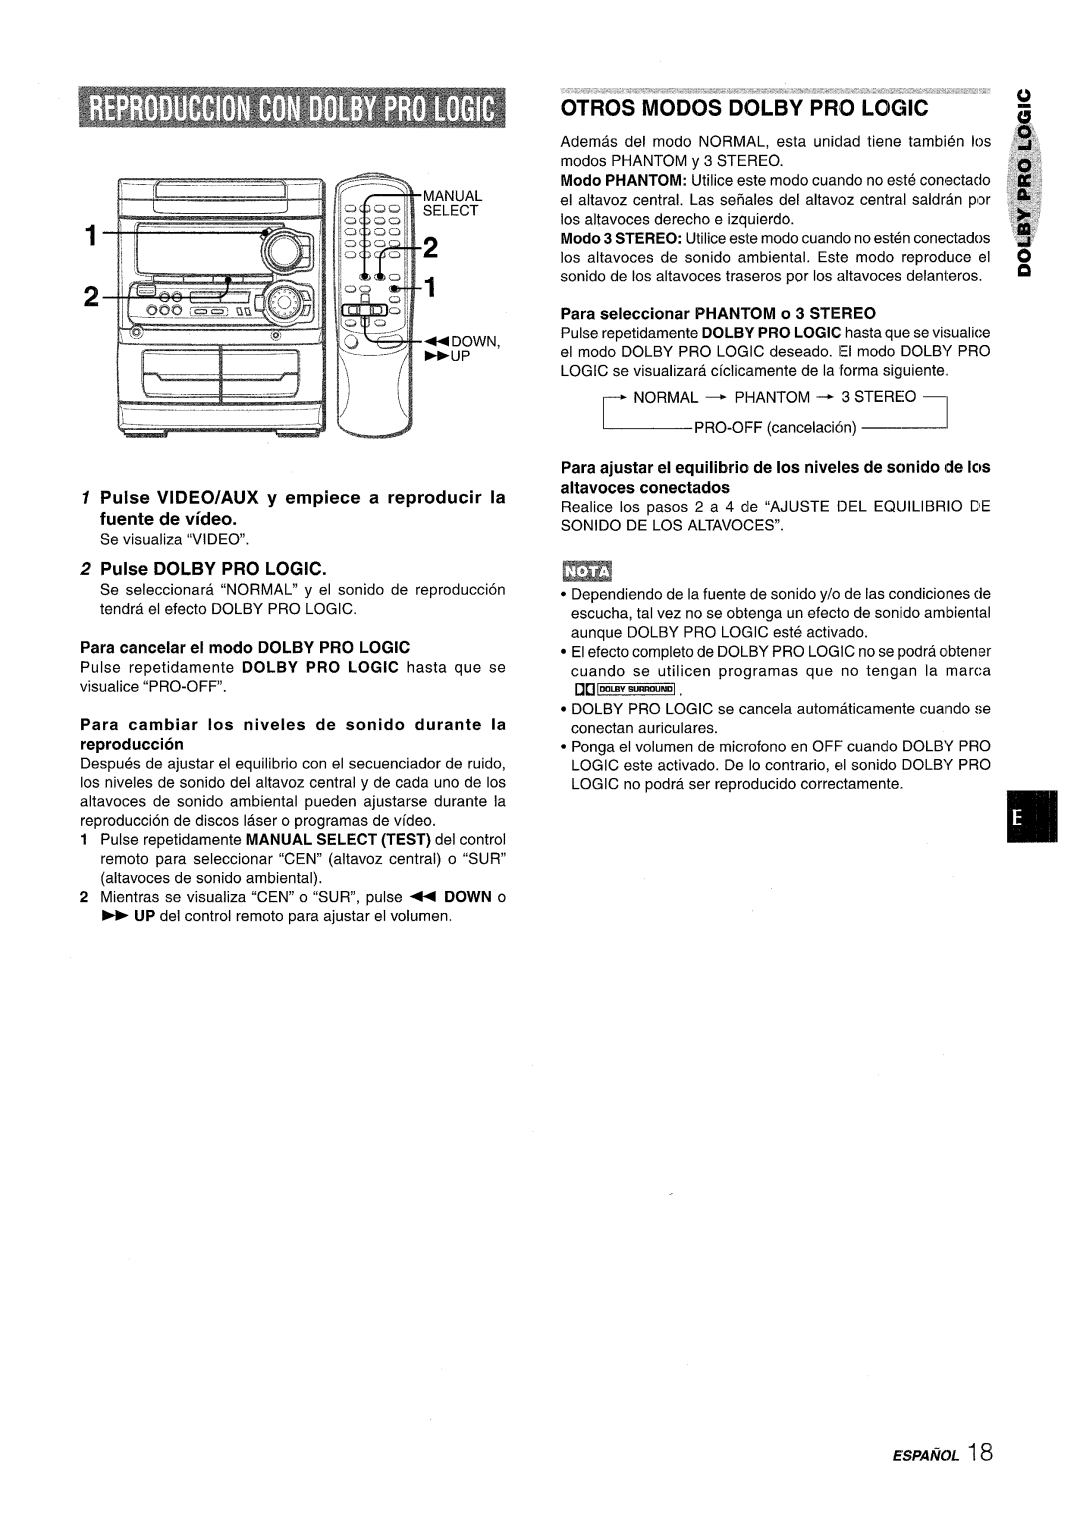 Sony SX-MT321, NSX-MT320 manual Pulse VIDEO/AUX y empiece a reproducer la, Pulse DOLBY PRO LOGIC, fuente de video 